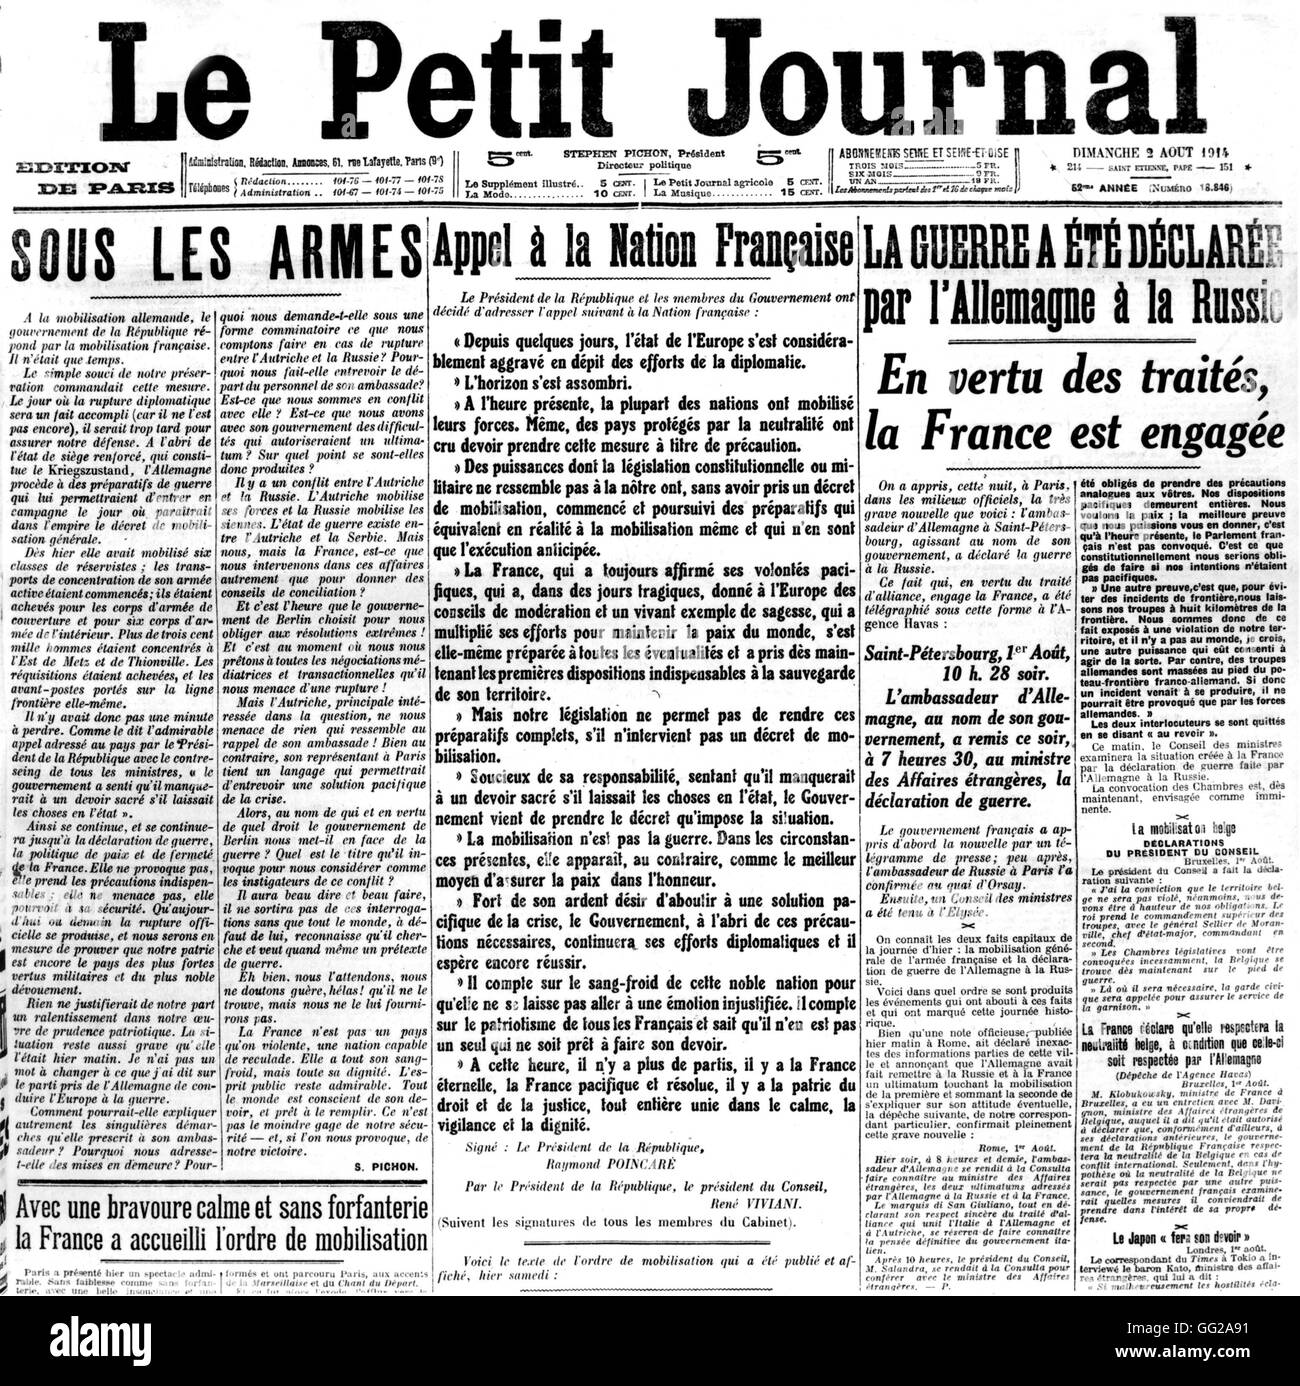 Titre annonçant le début de la guerre dans le journal français "Le